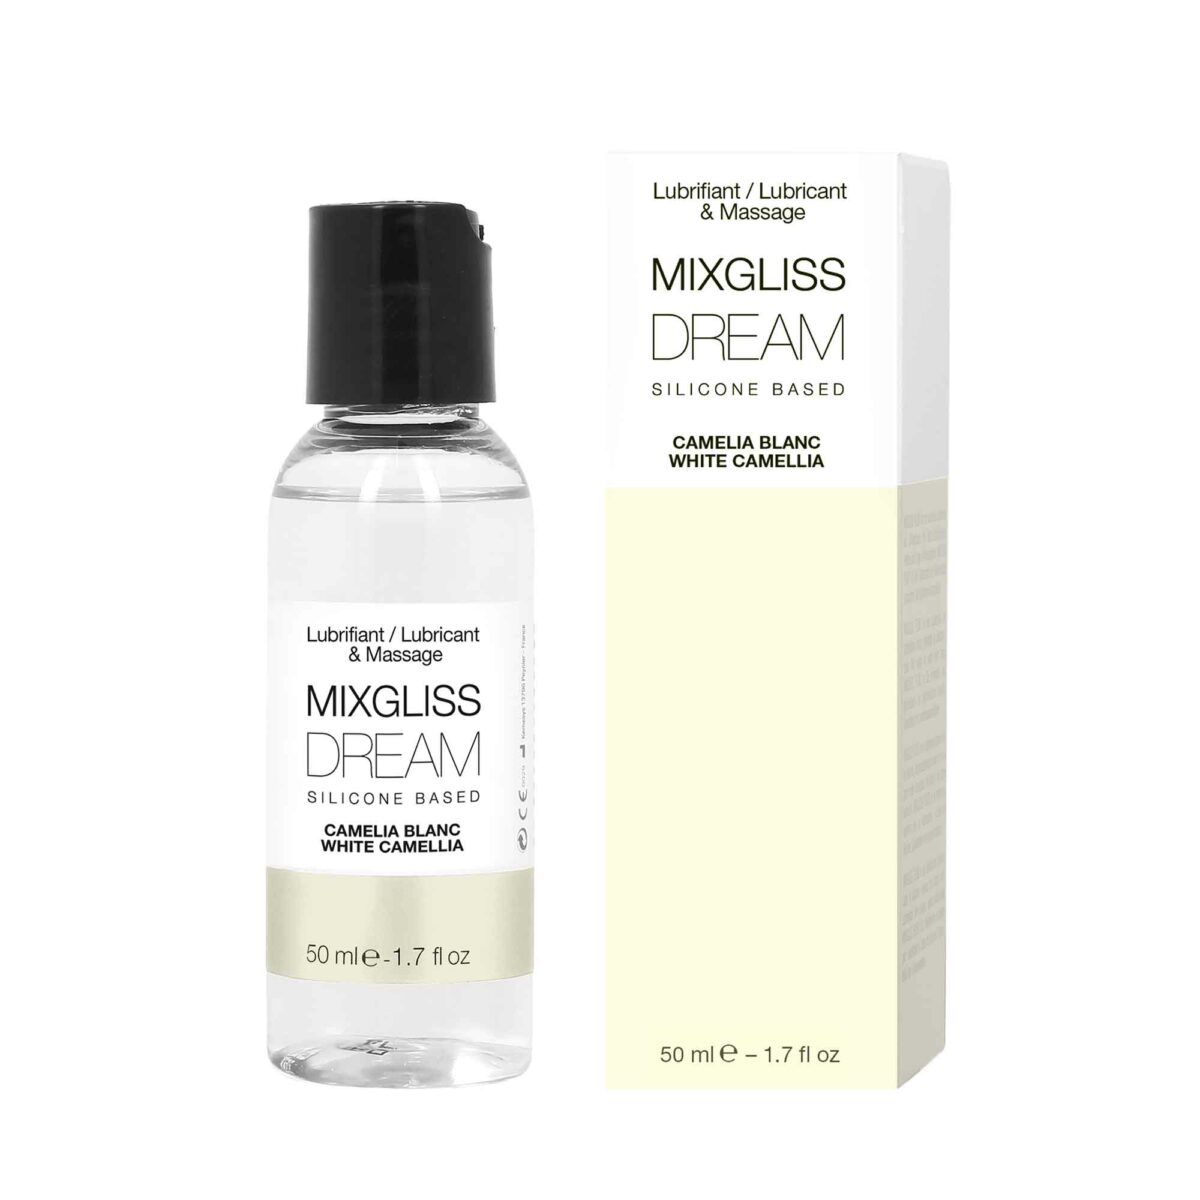 Lubrifiant Mixgliss à base de silicone dream parfumé au camélia blanc